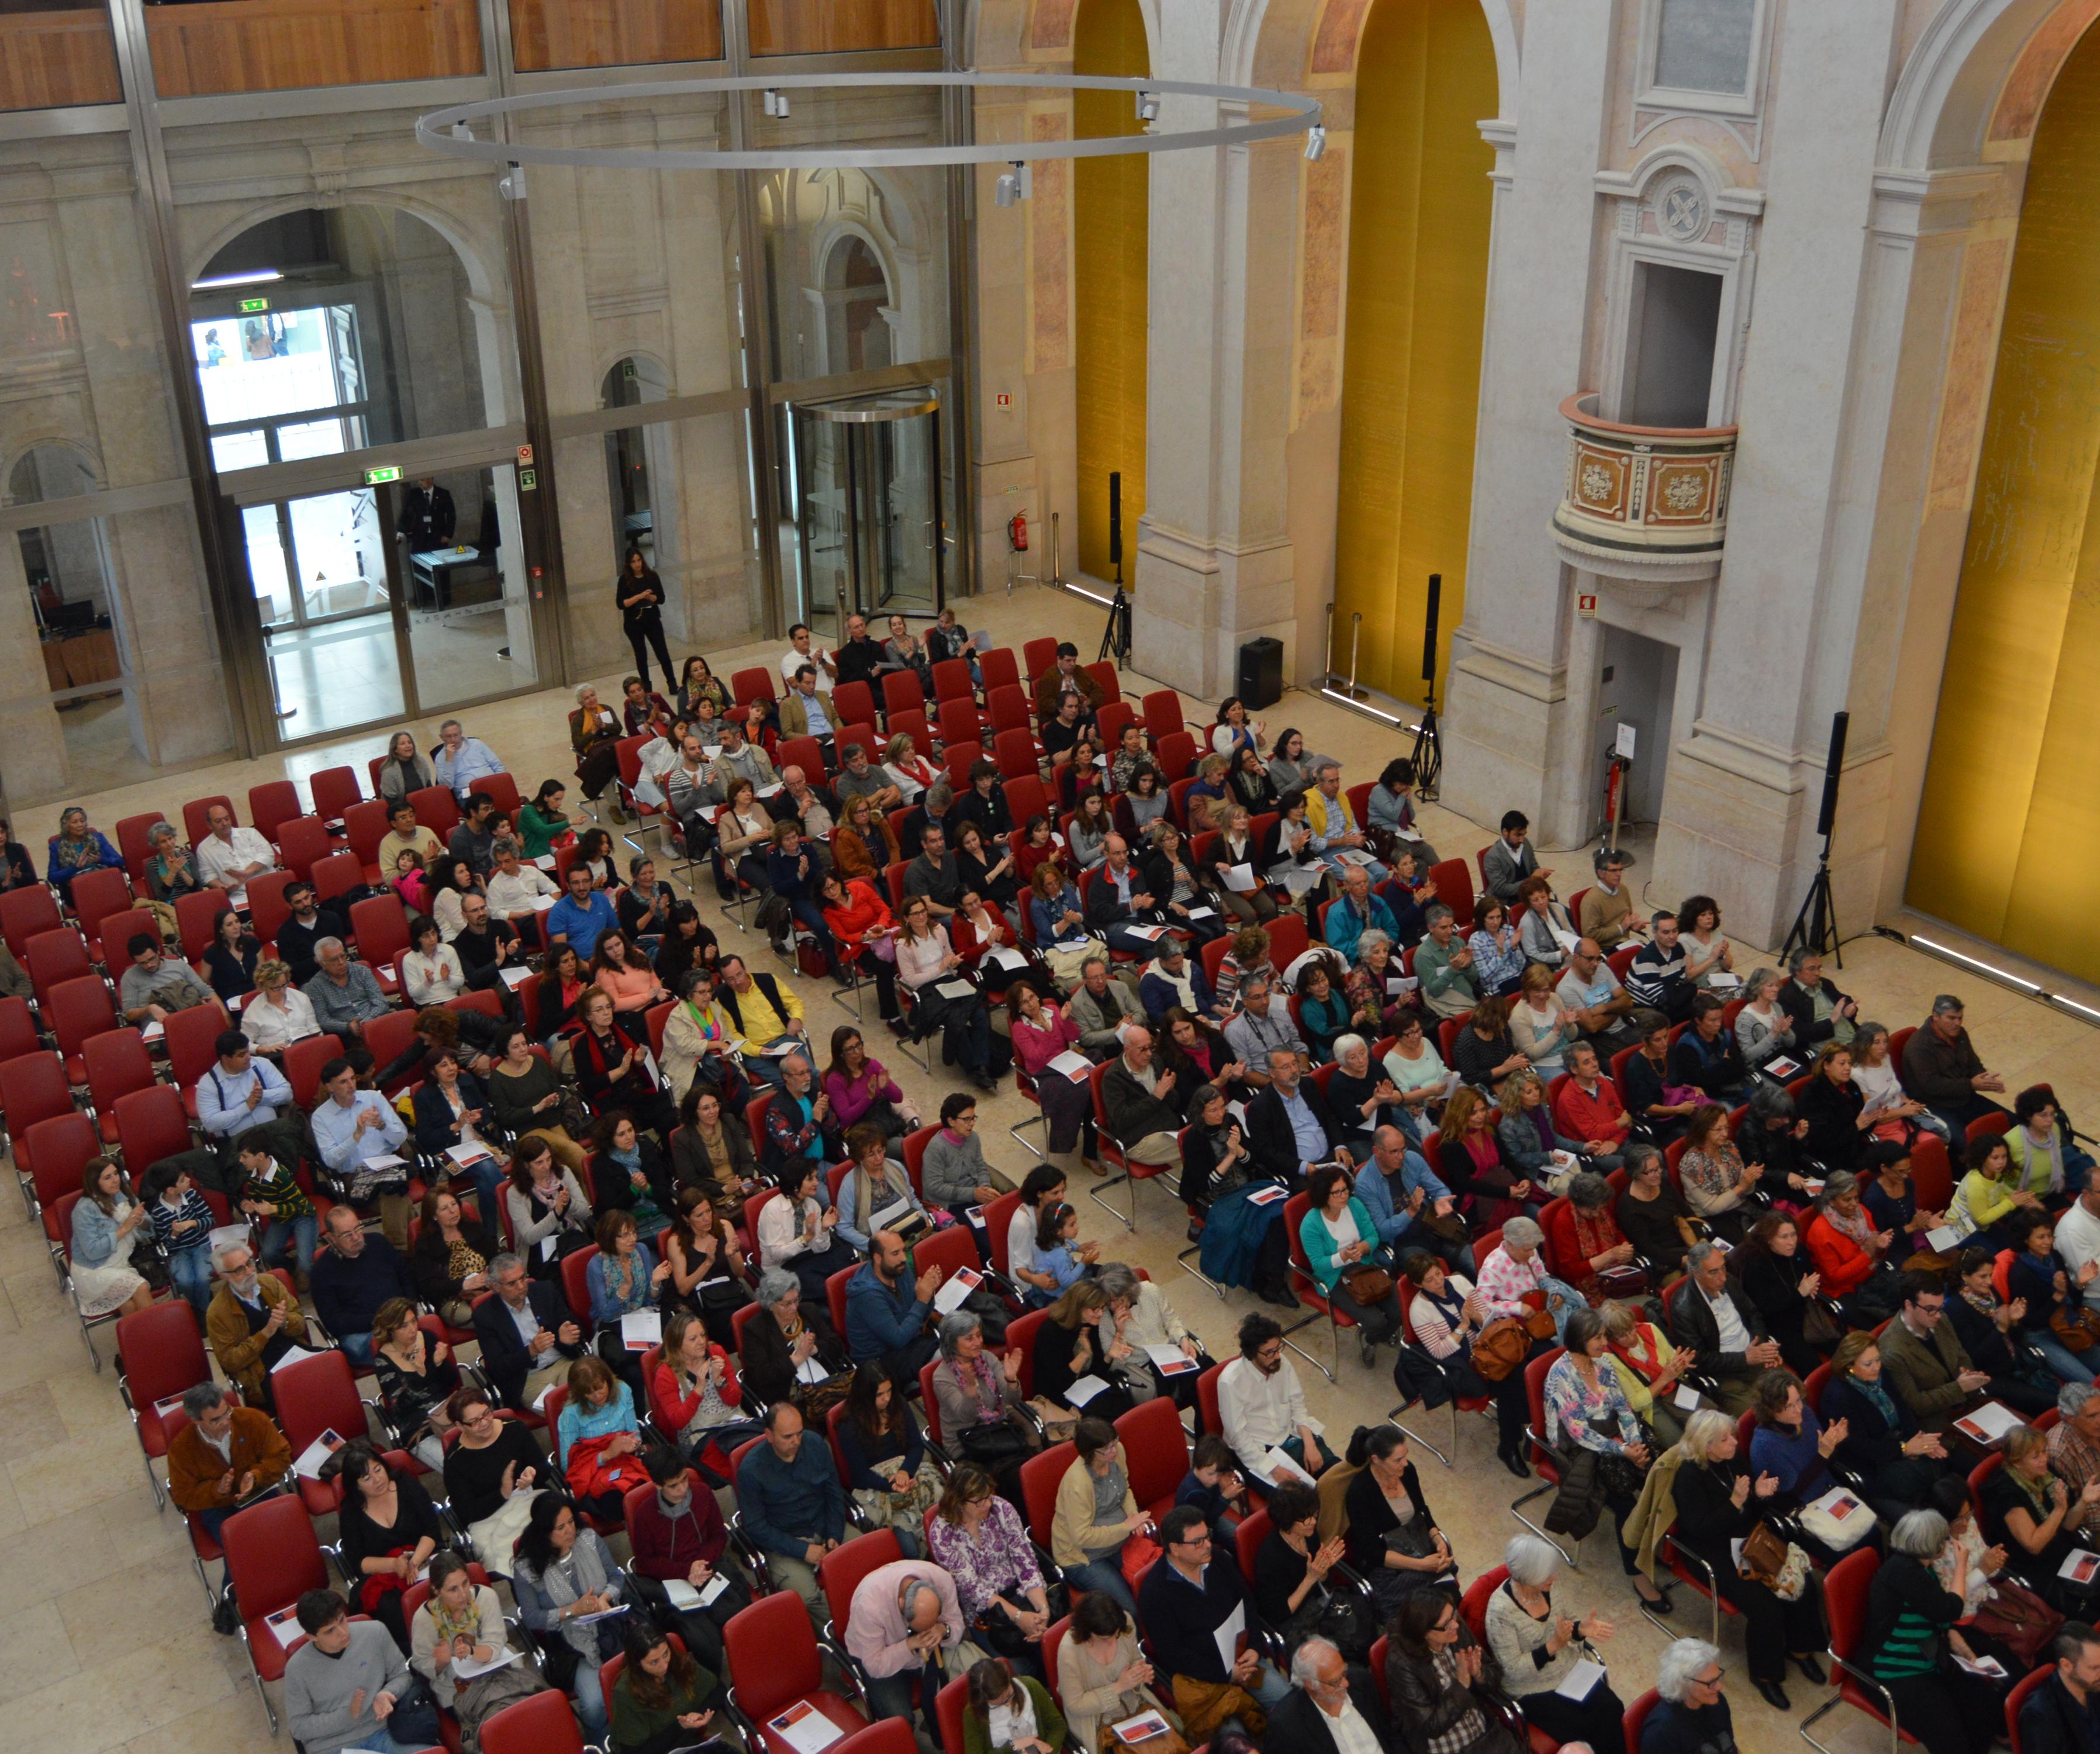 Pessoas sentadas na plateia assistem a concerto de música na nave da antiga igreja de S. Julião